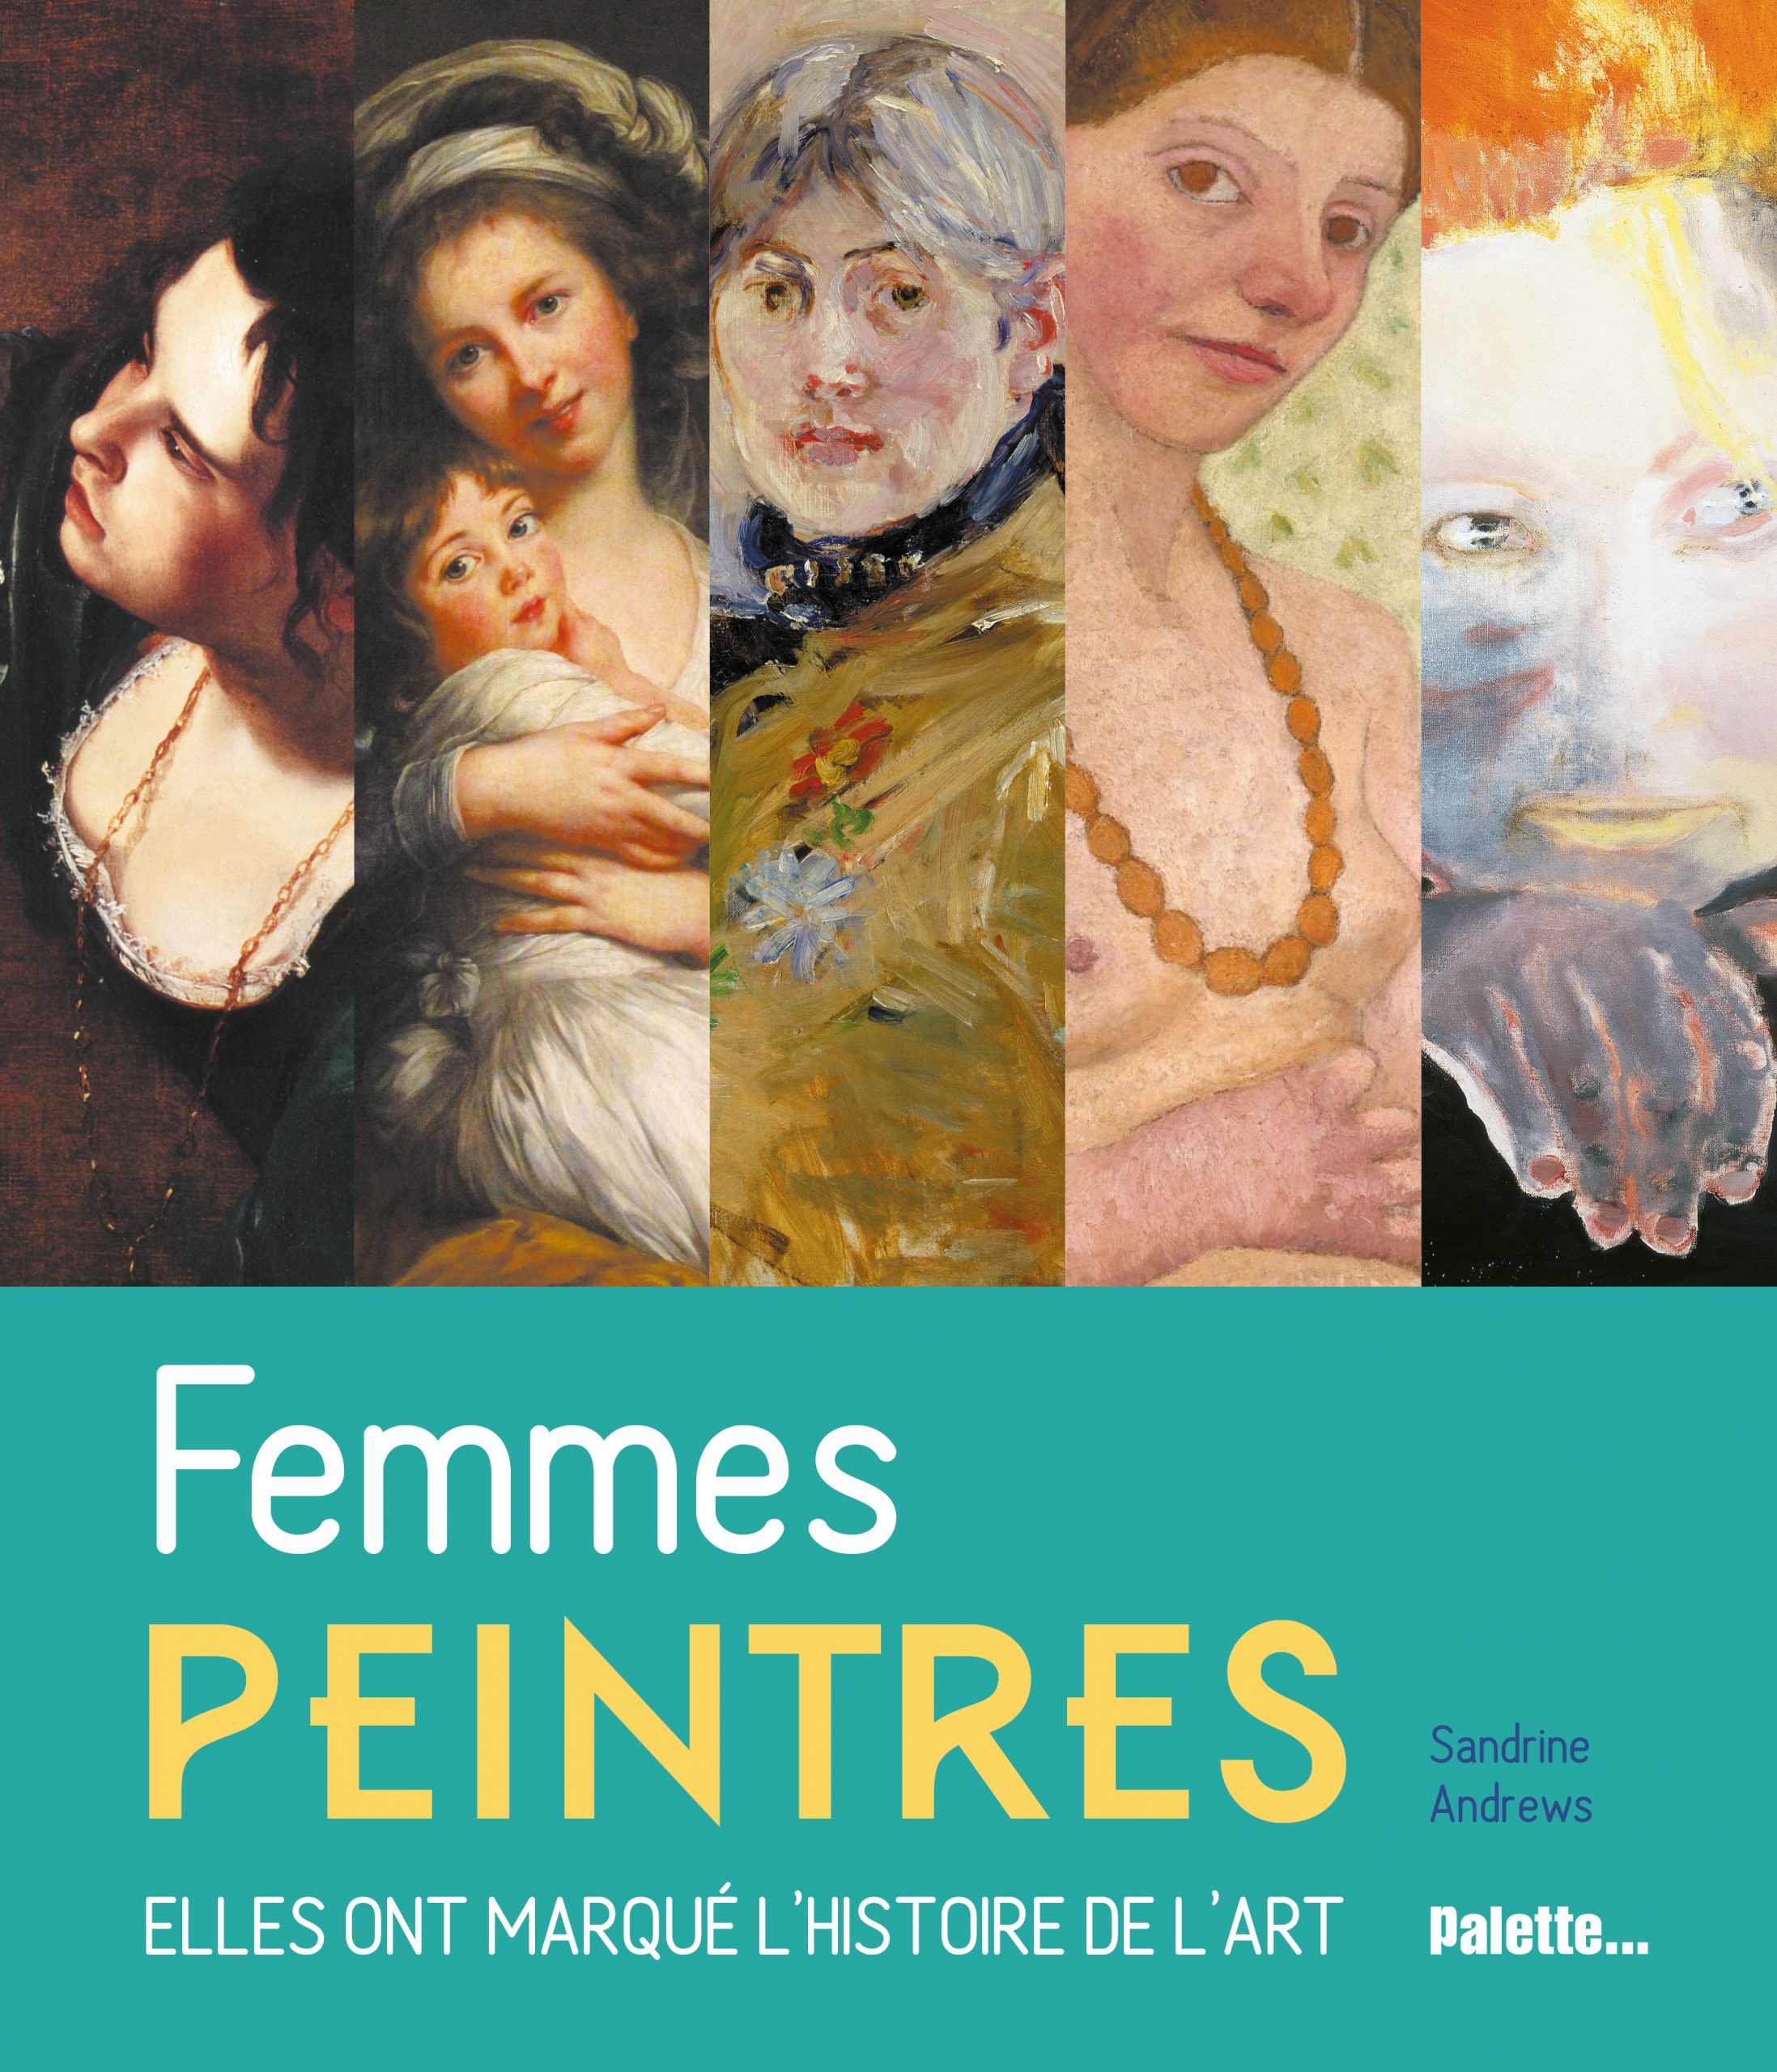 Femmes peintres - Sandrine Andrews - Palette